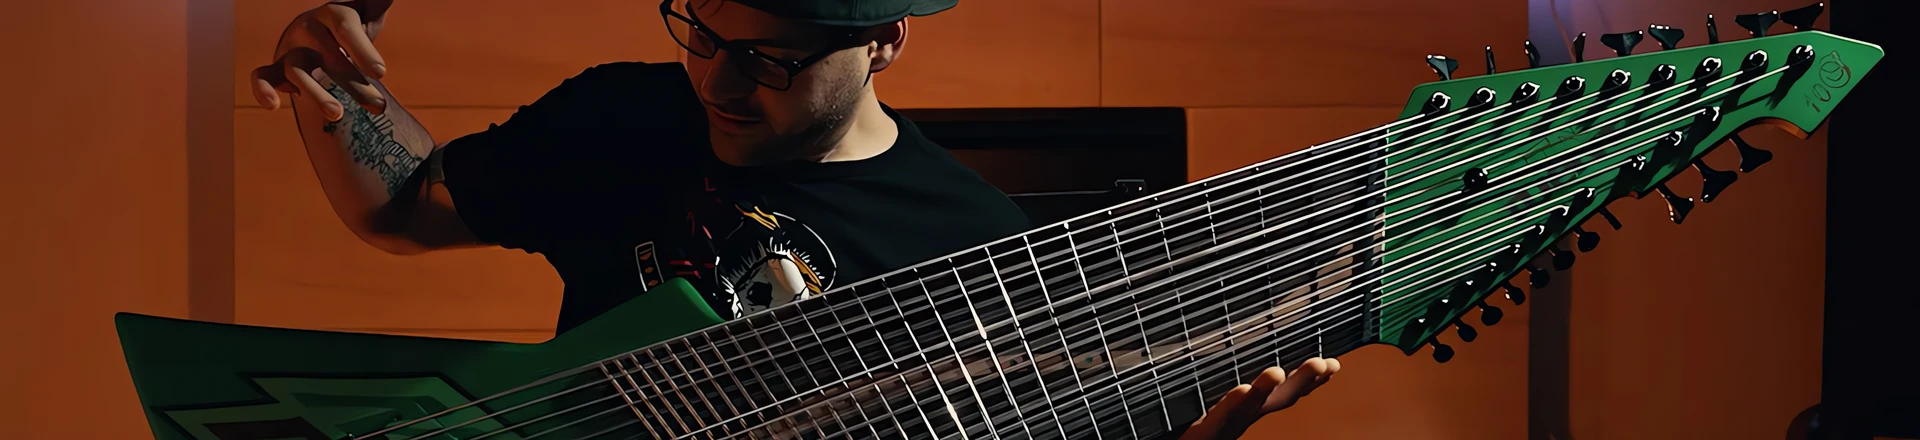 Jared Dines urzeczywistnia mityczną, memową gitarę